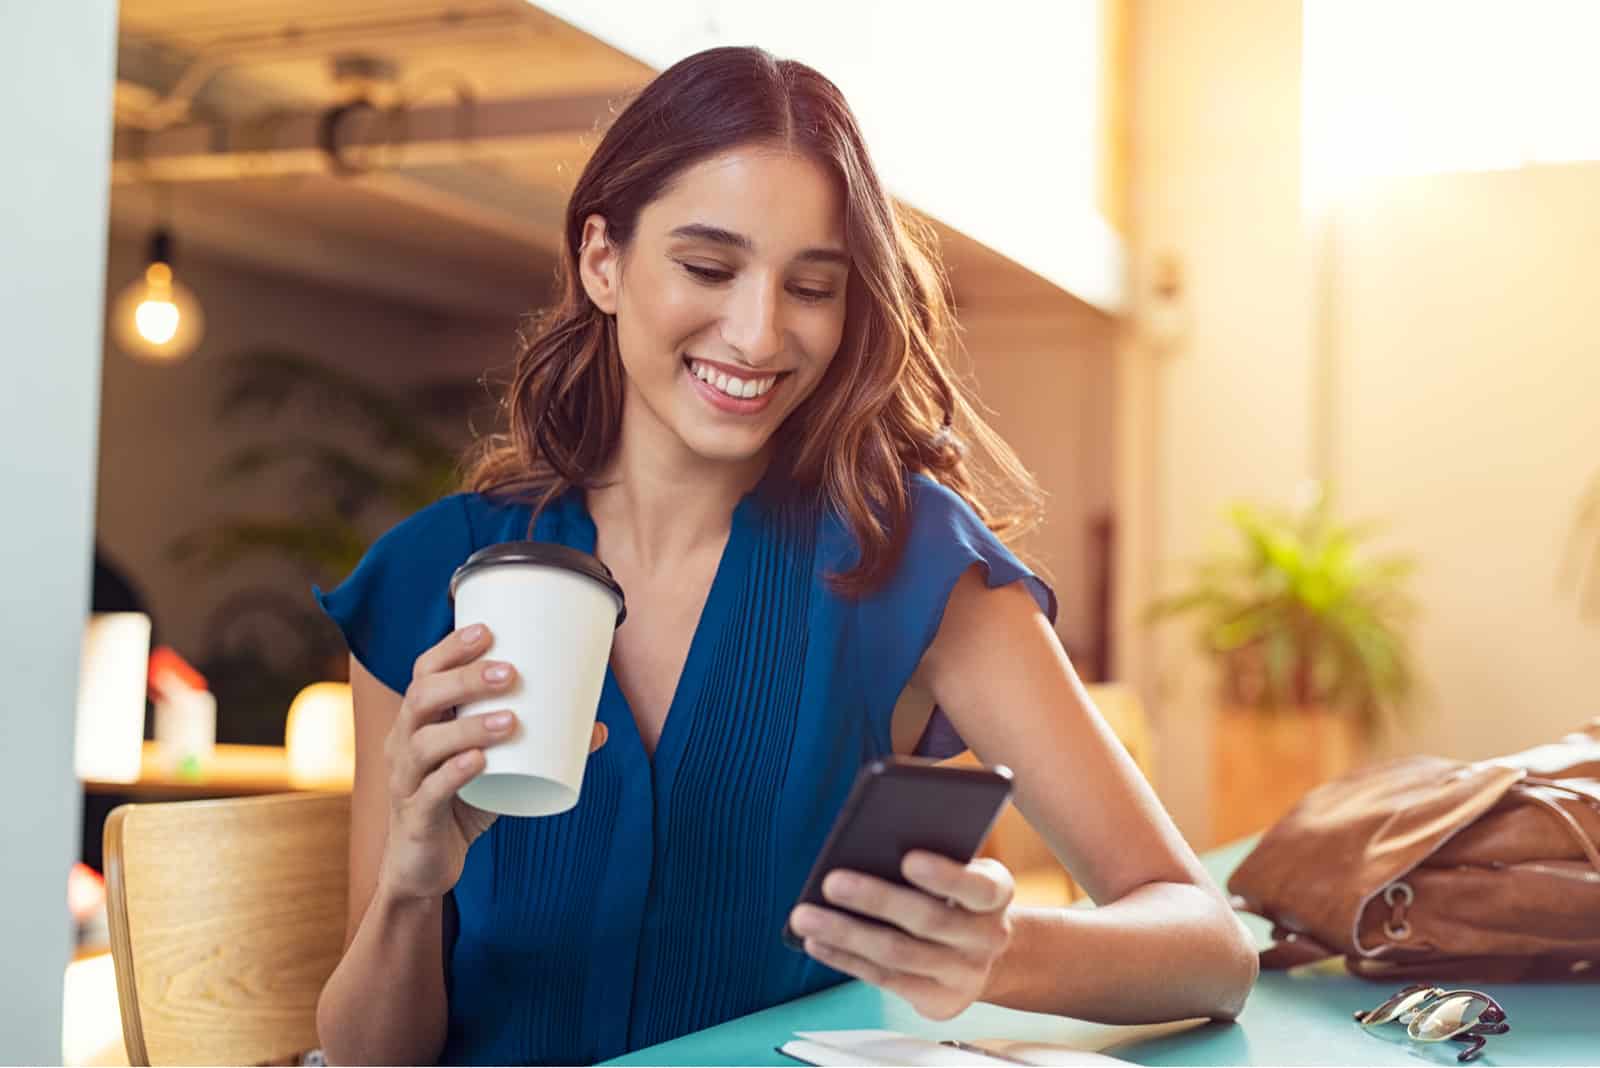 una donna sorridente seduta ad un tavolo con un telefono in mano